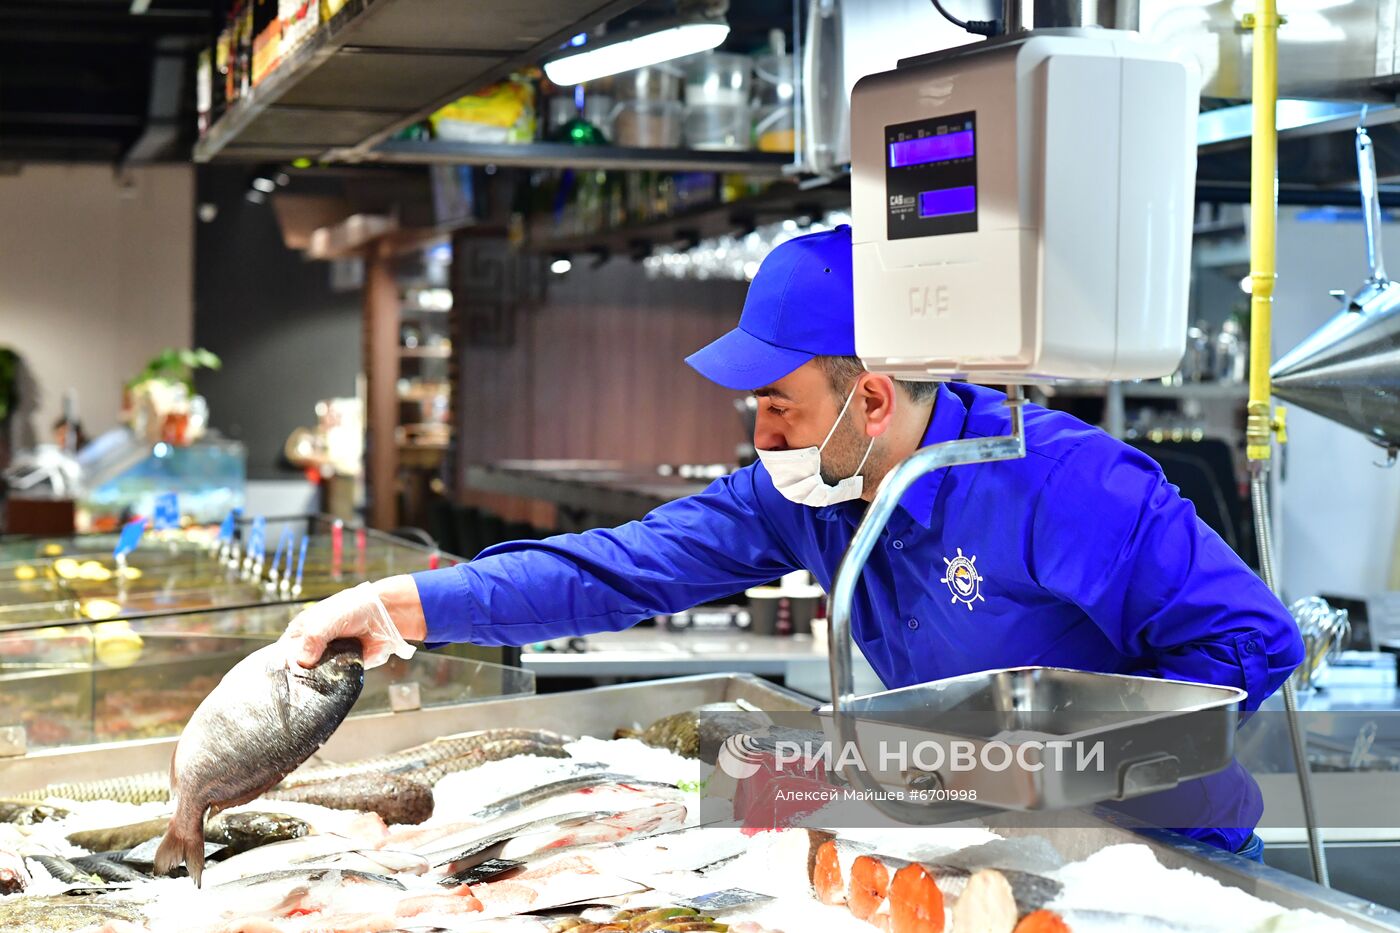 Продажа икры и рыбы в Москве